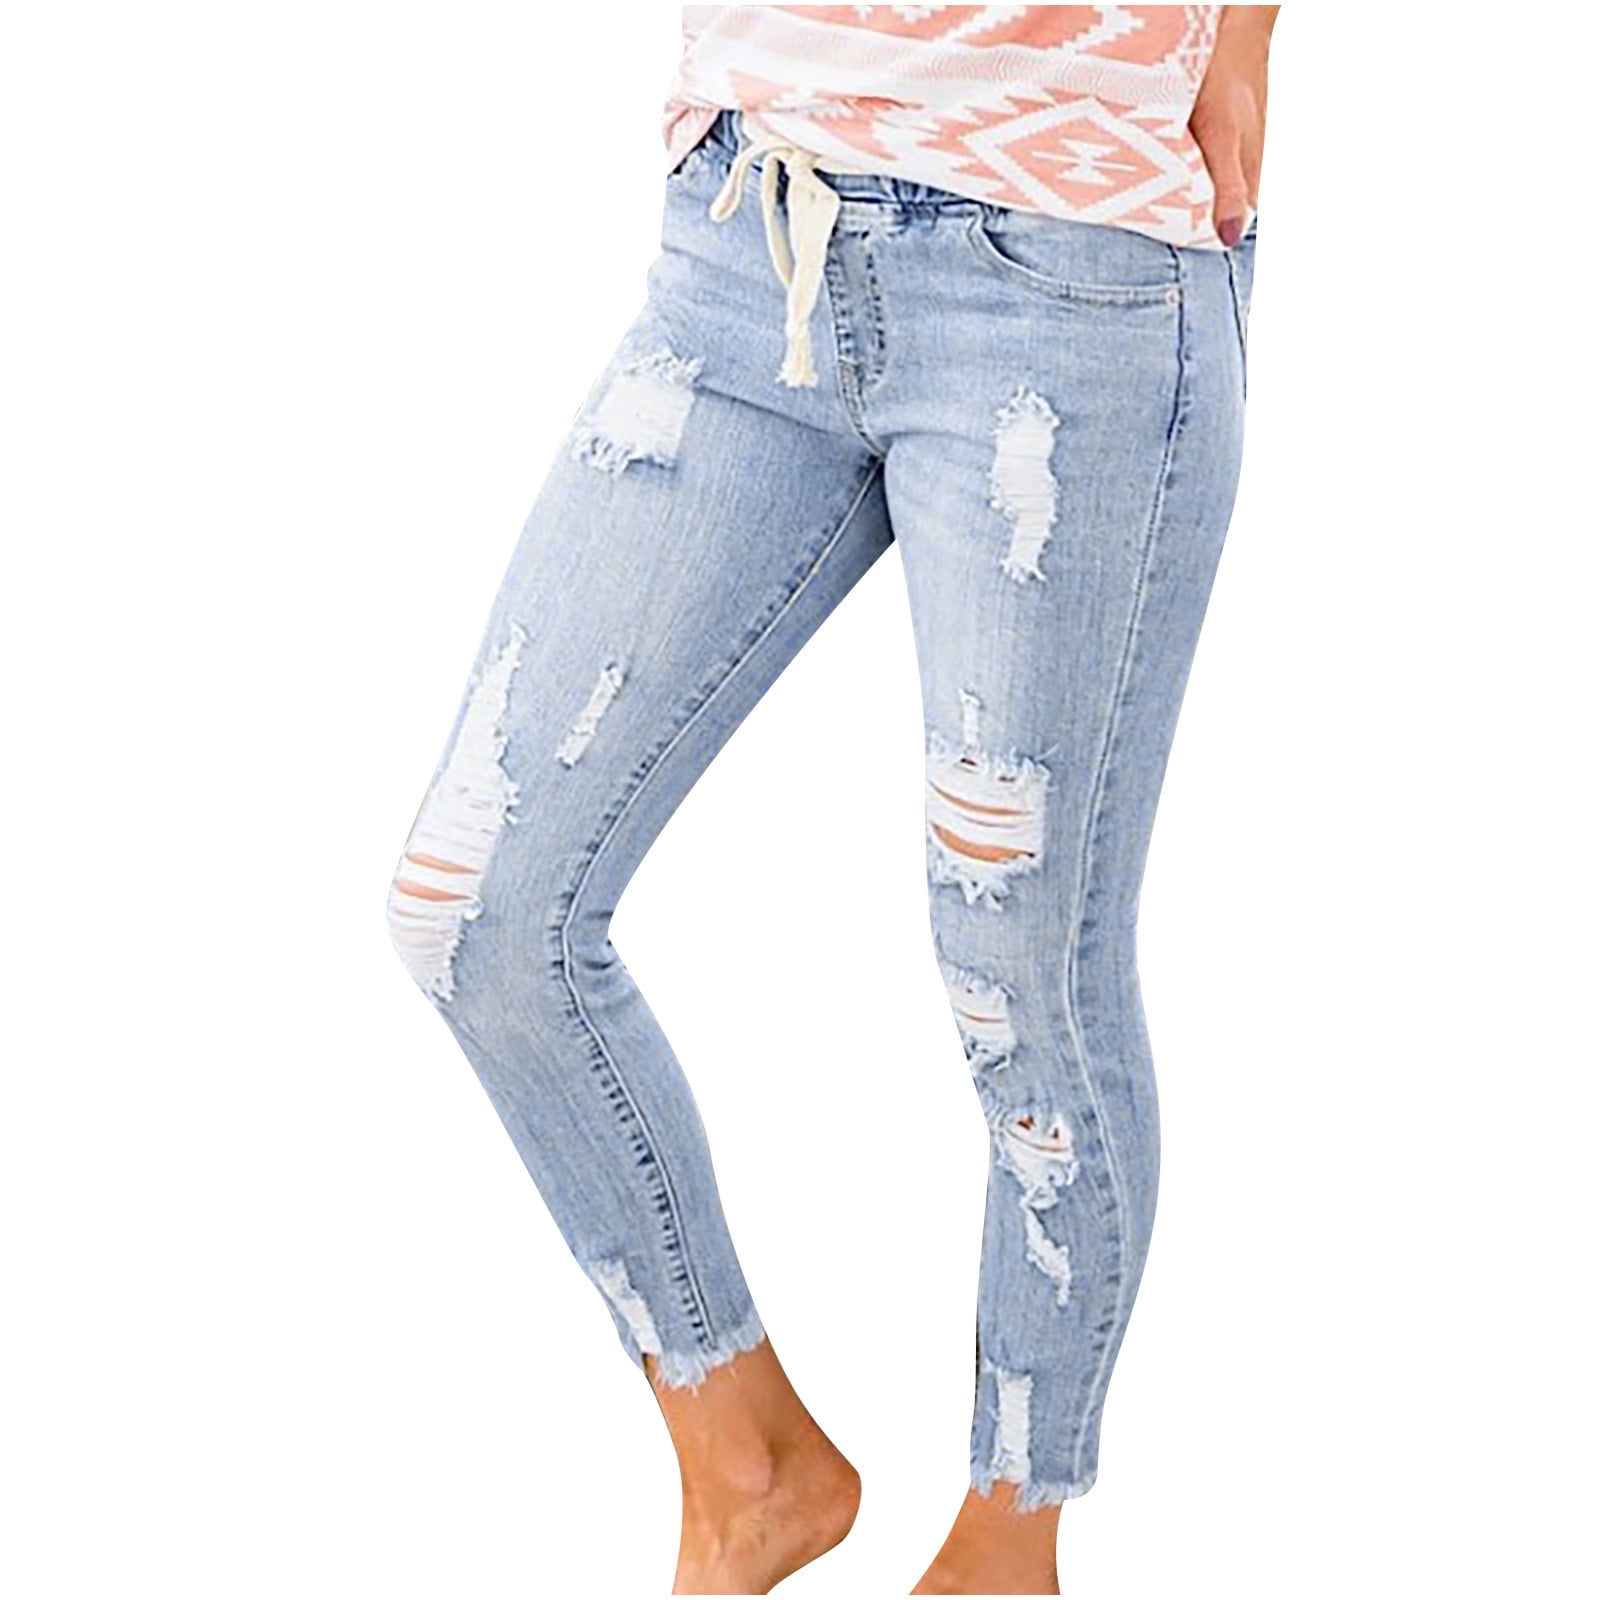 Fanxing Women High Waist Ripped Jeans Summer Cool Skinny Stretch Denim Jean Pants Blue,S/M/L/XL/XXL Walmart.com